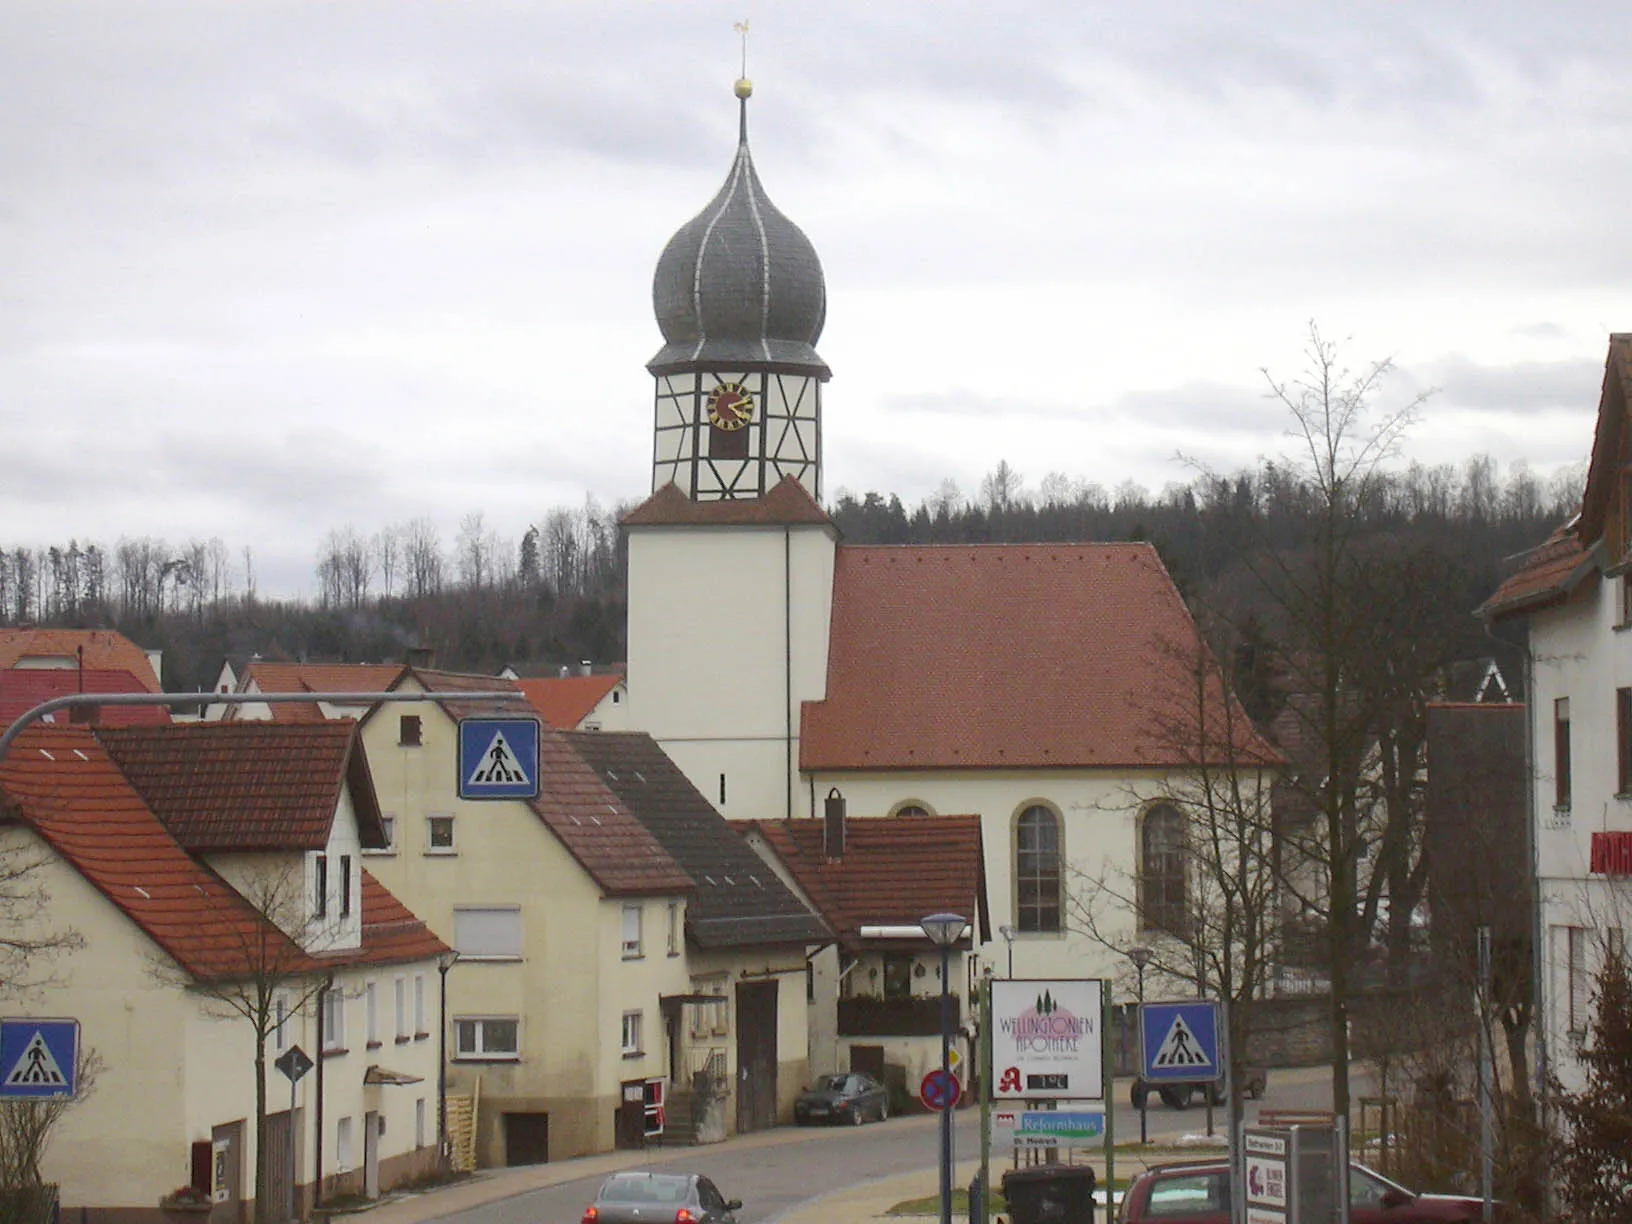 Photo showing: Kilian church in Wüstenrot, Germany